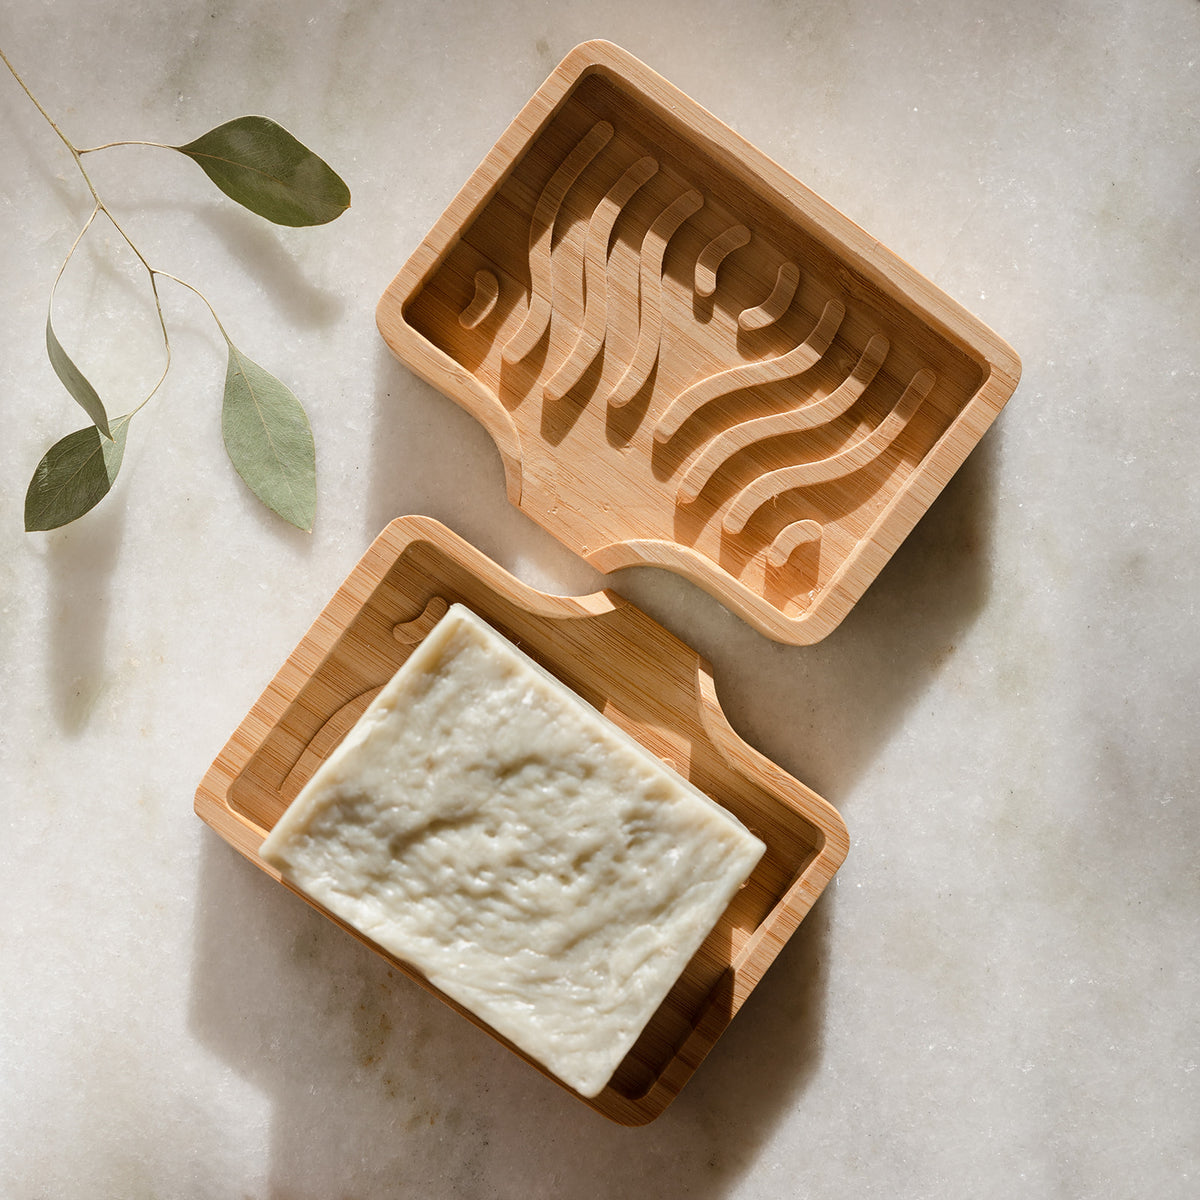 Waterfall Self-Draining Bamboo Soap Dish - On Board Organic Skincare